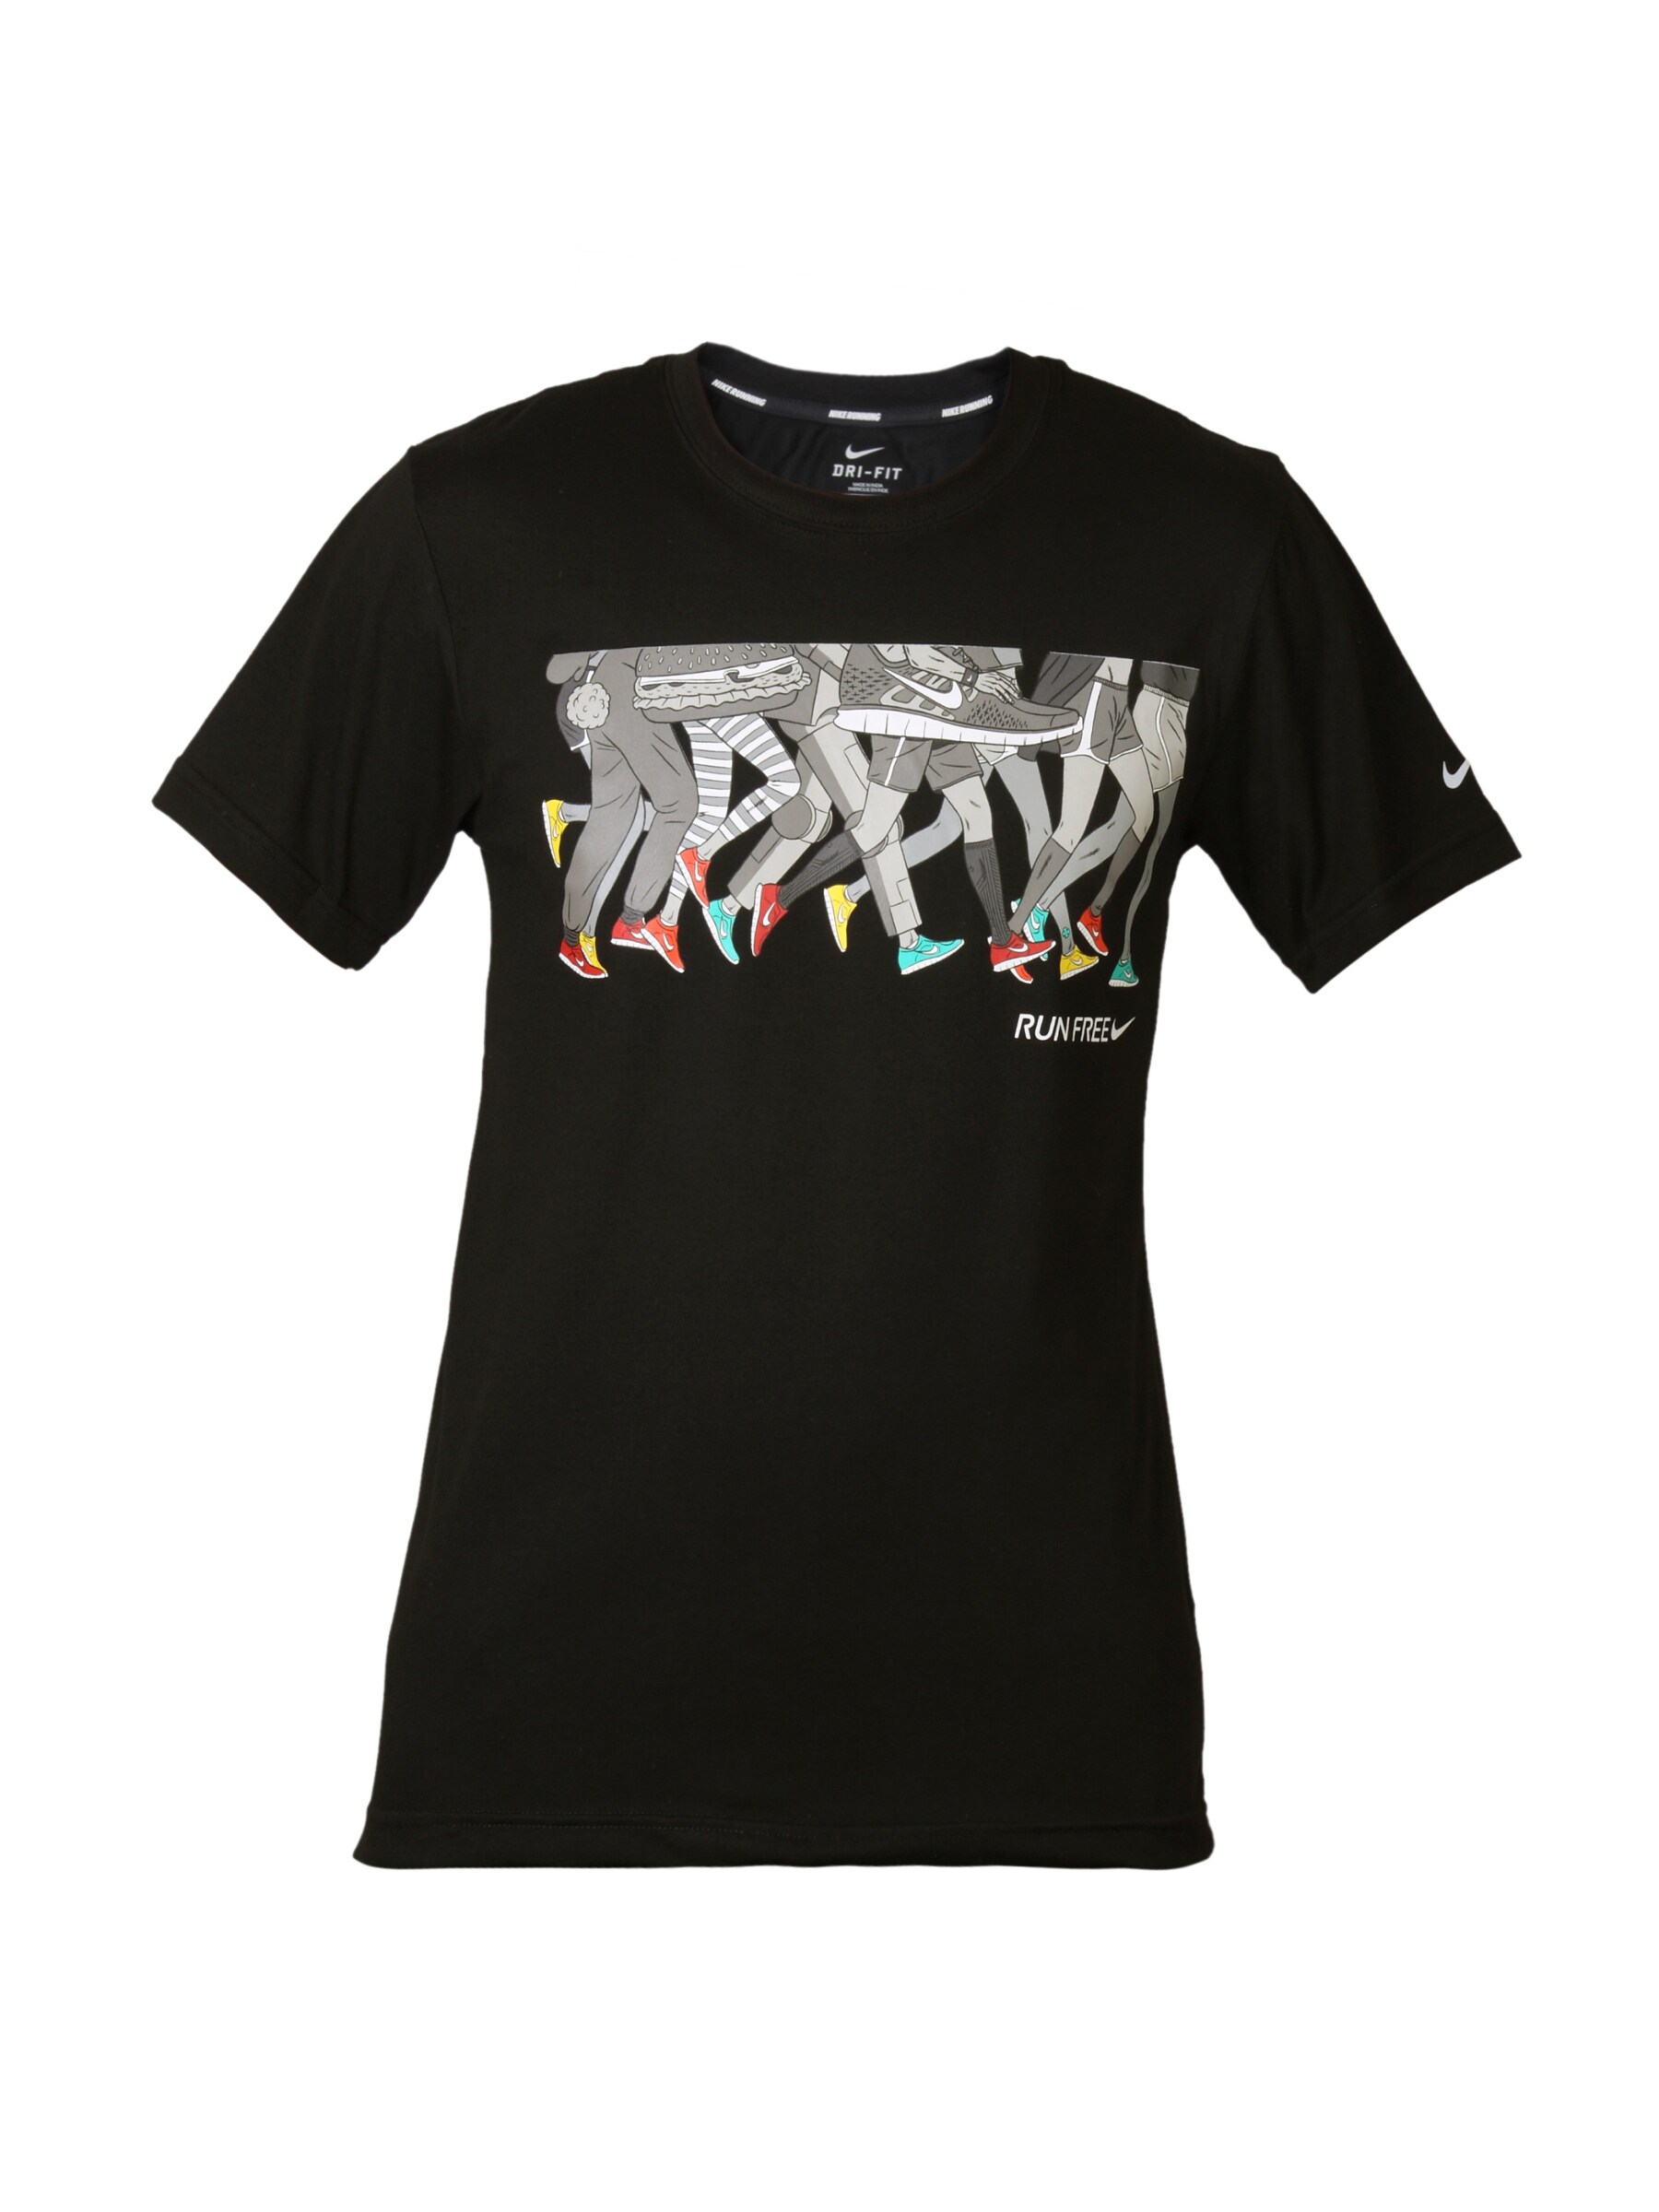 Nike Men Printed Cruis Black T-shirt